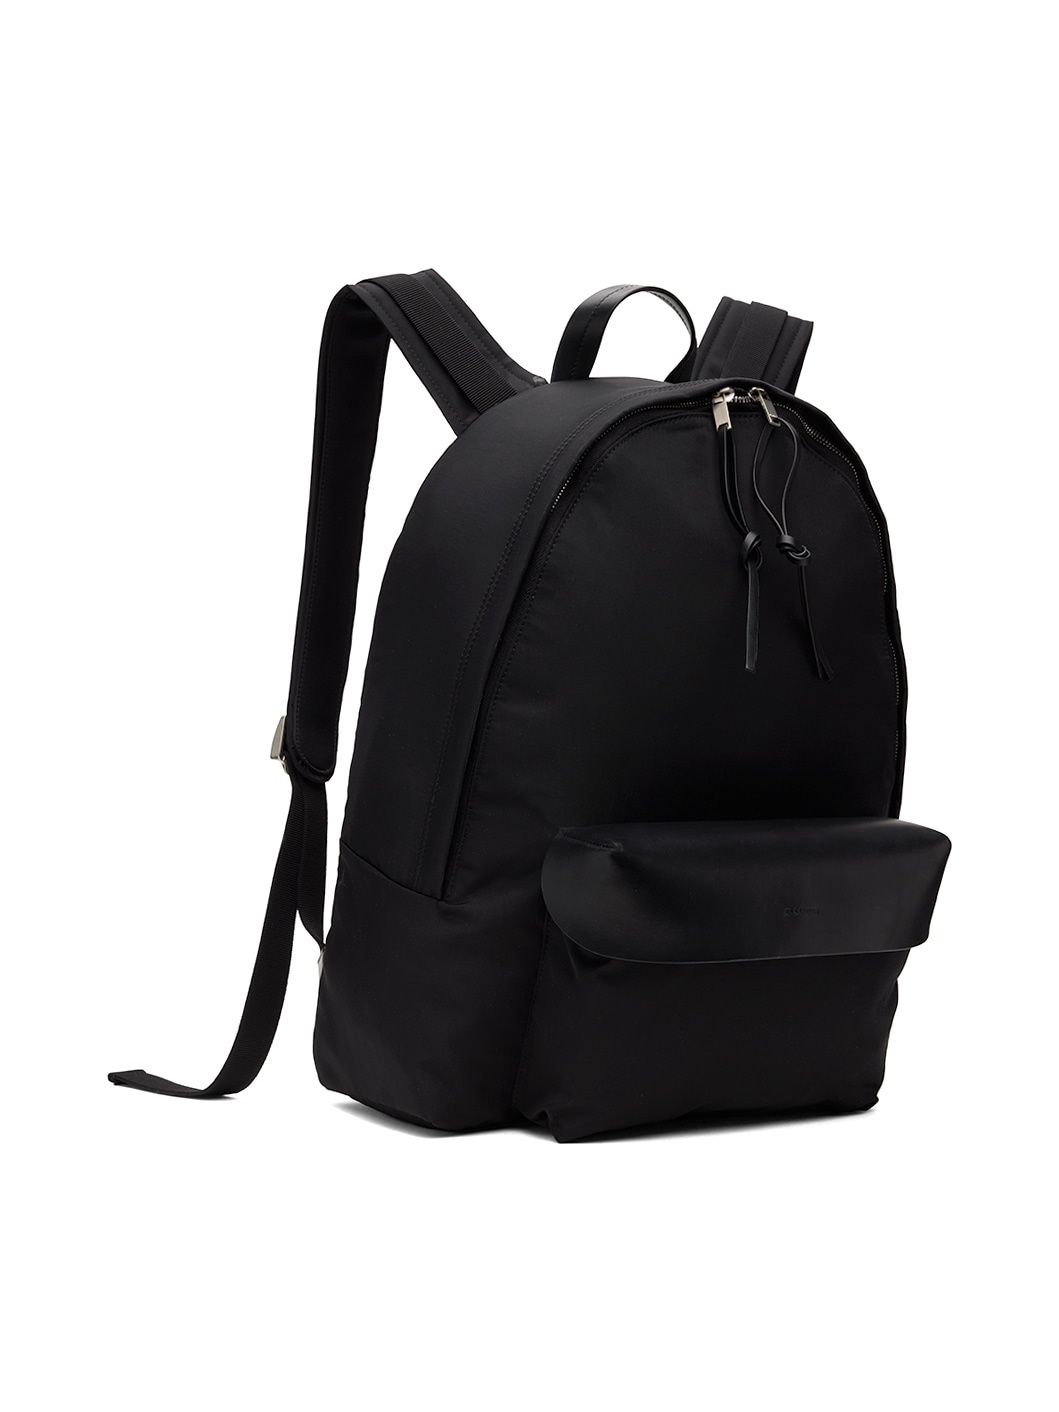 Black Lid Backpack - 2